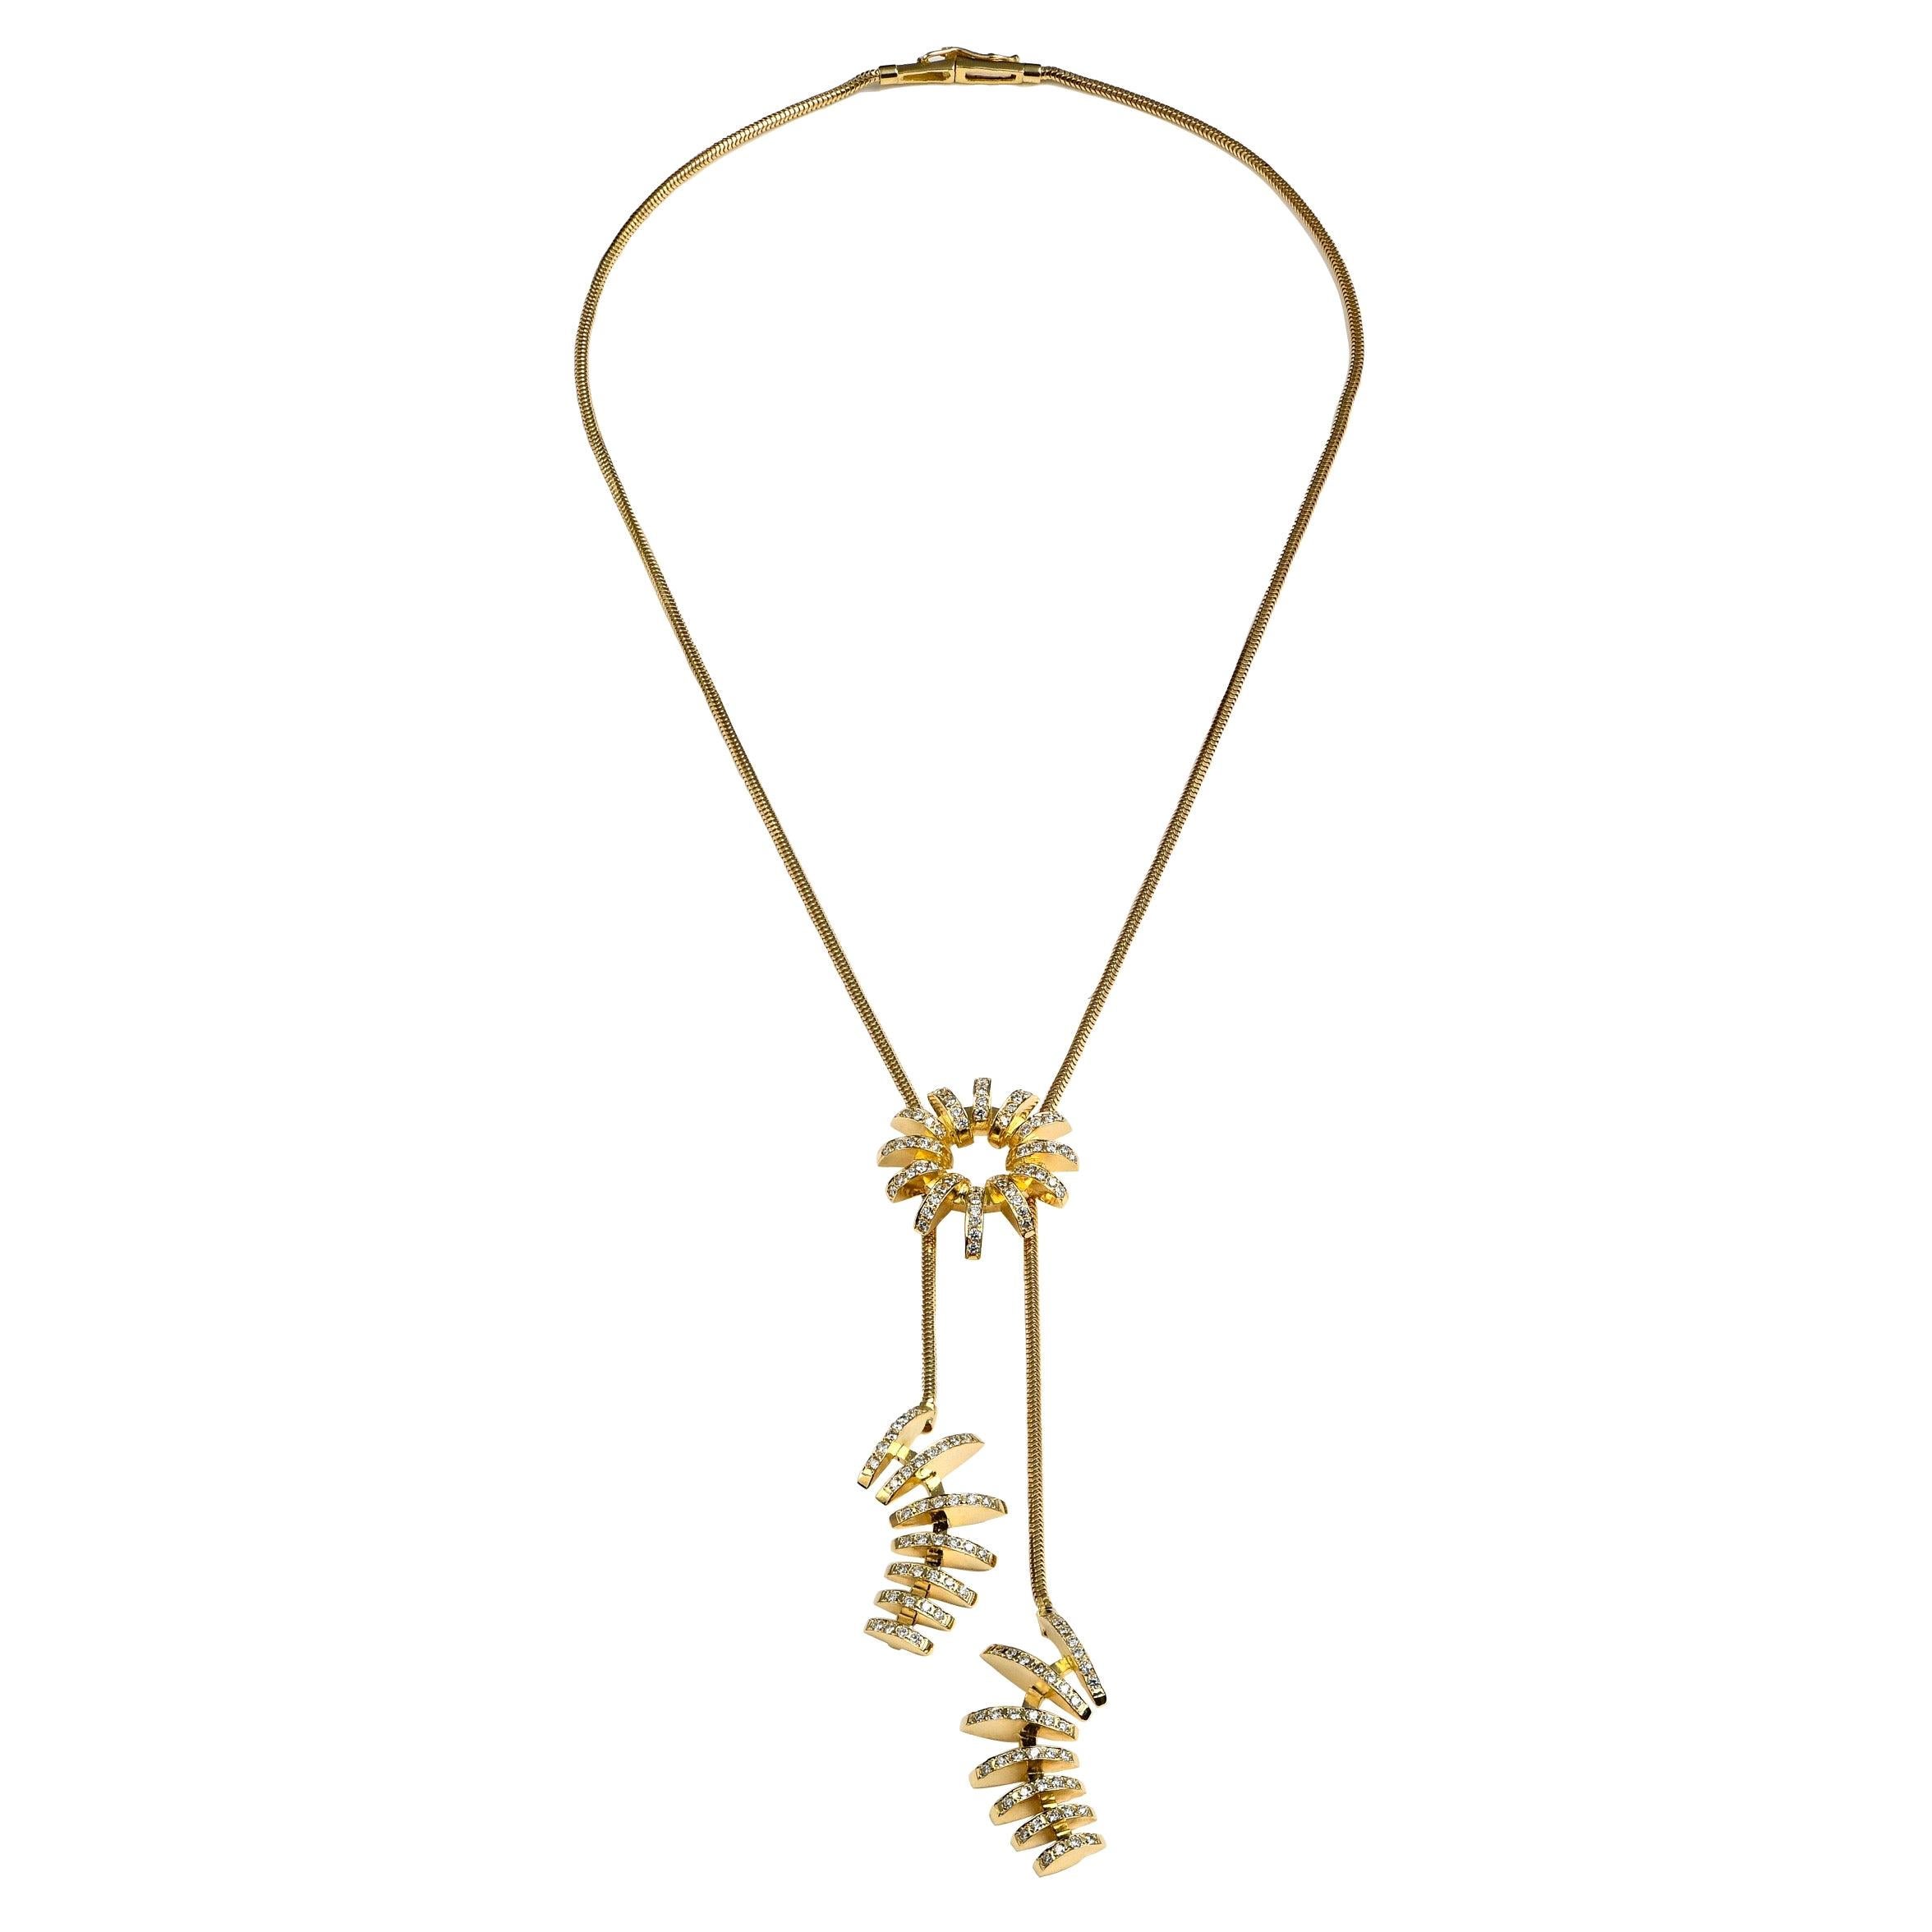 Maria Kotsoni- Contemporary 18K Yellow Gold & White Diamond Sautoir Necklace, 